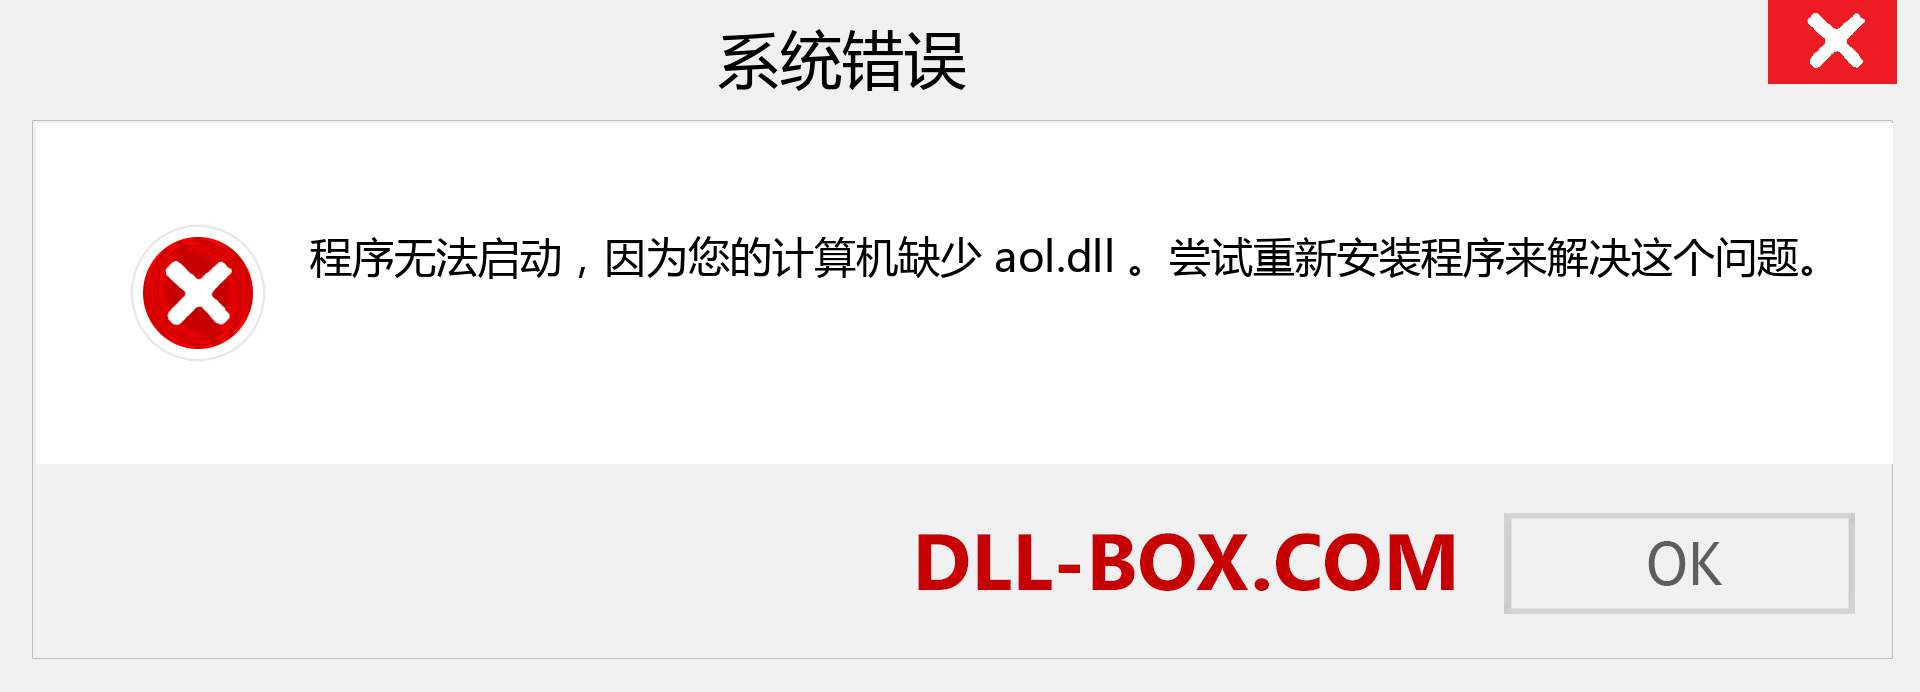 aol.dll 文件丢失？。 适用于 Windows 7、8、10 的下载 - 修复 Windows、照片、图像上的 aol dll 丢失错误